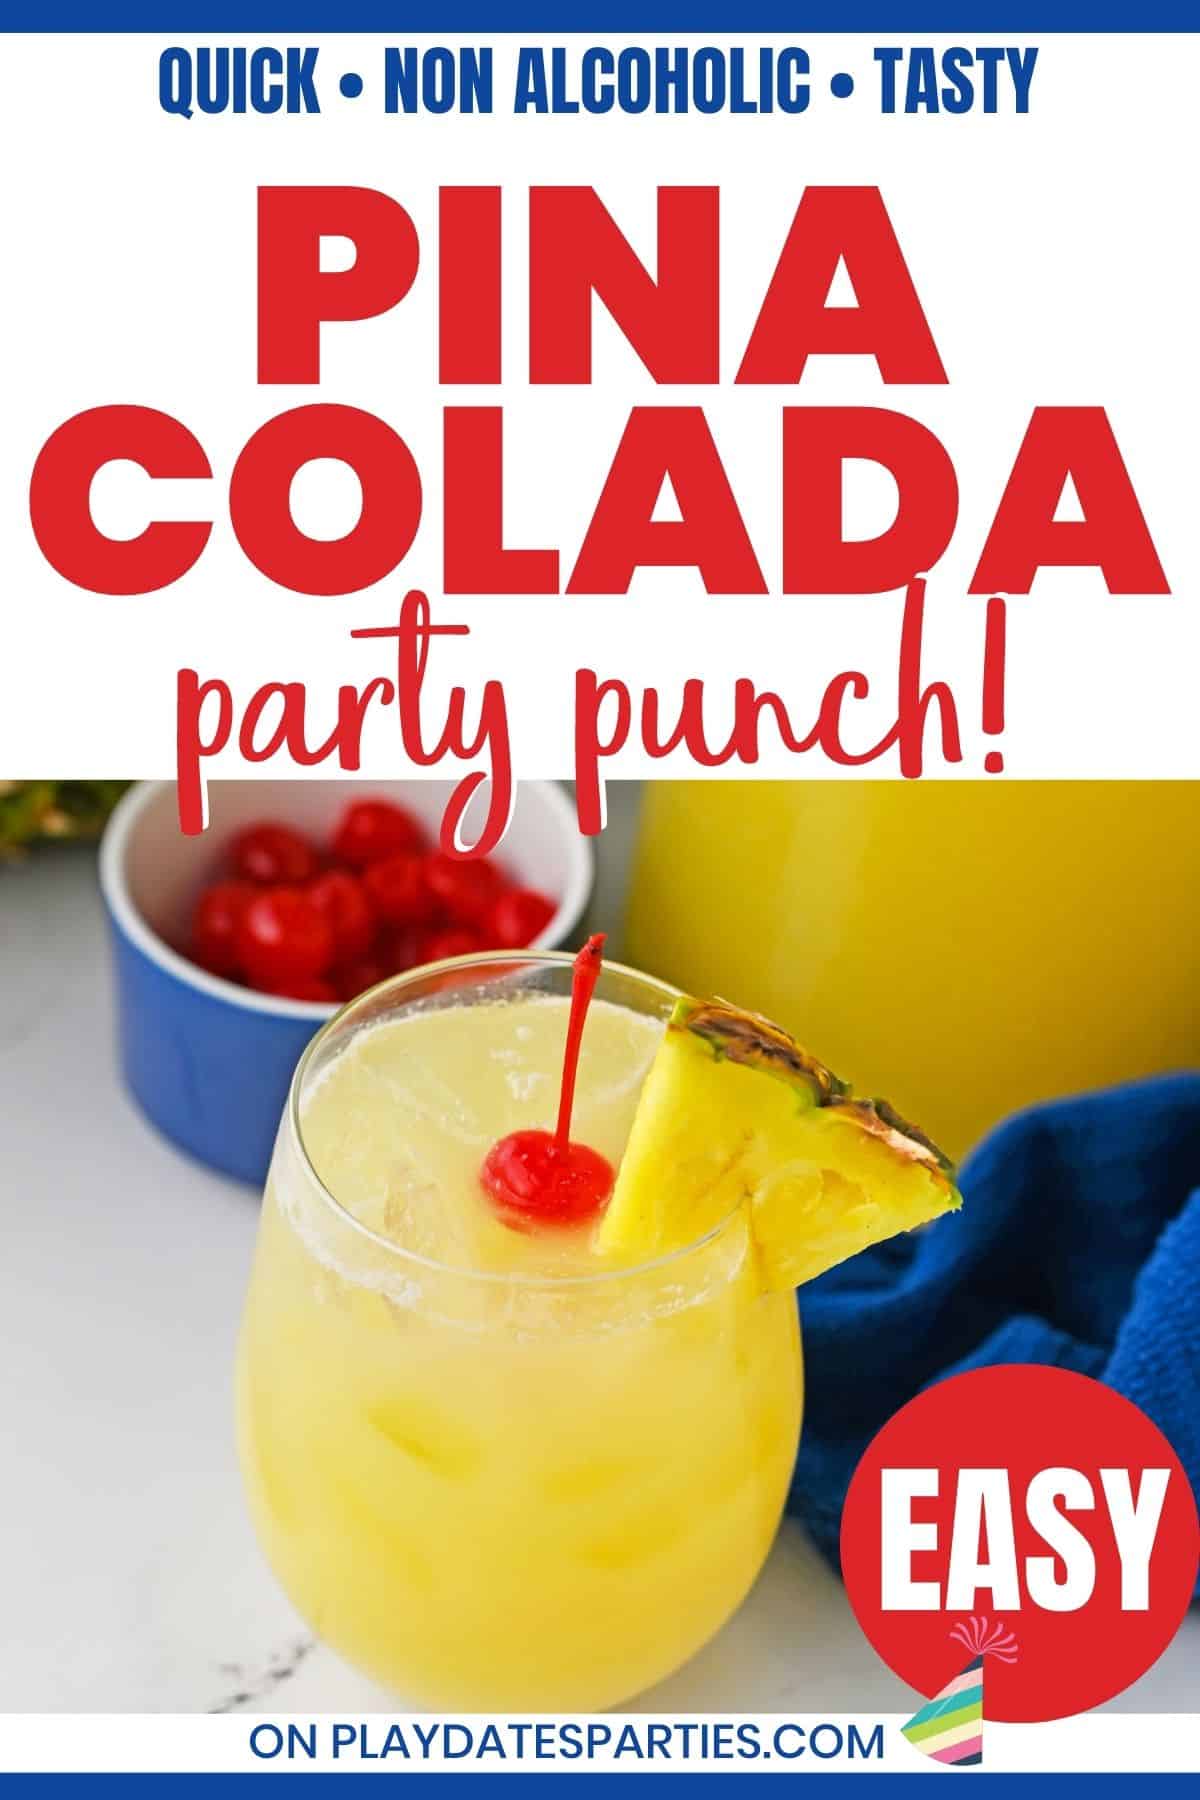 Pina Colada party punch pin image.